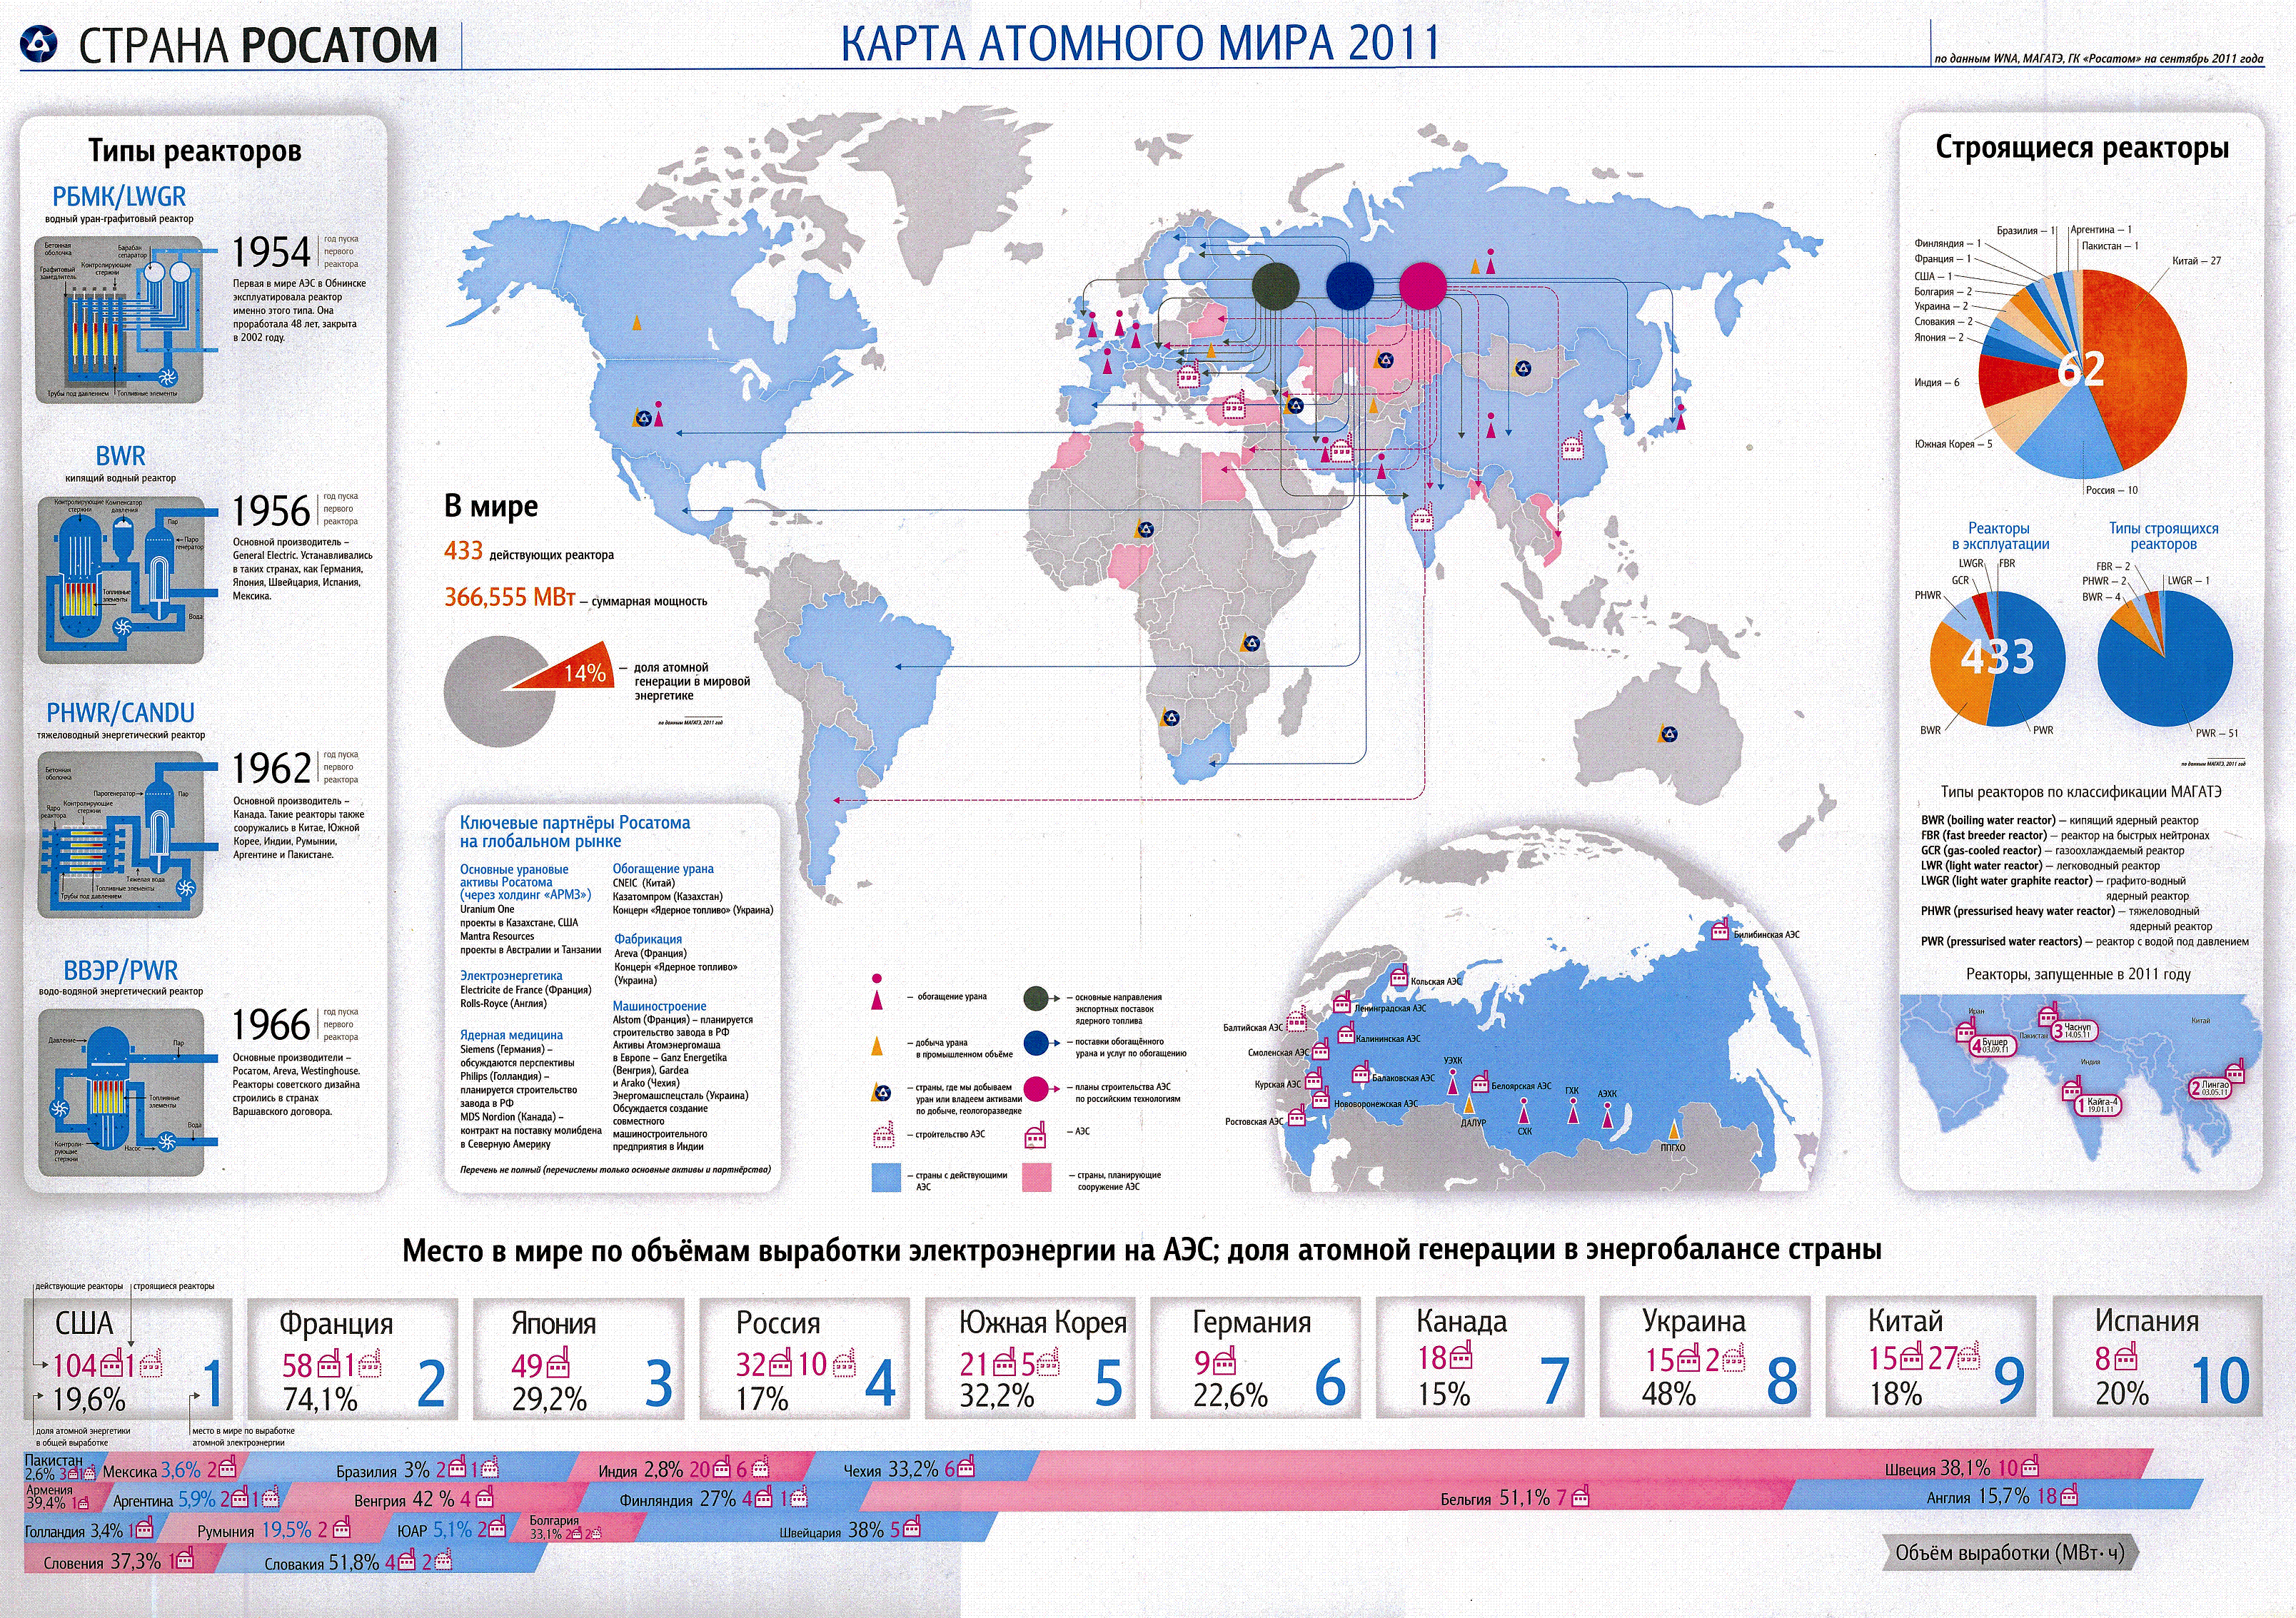 Мощность аэс в мире. Мировой рынок атомного проектирования. Карта АЭС Росатом в мире.